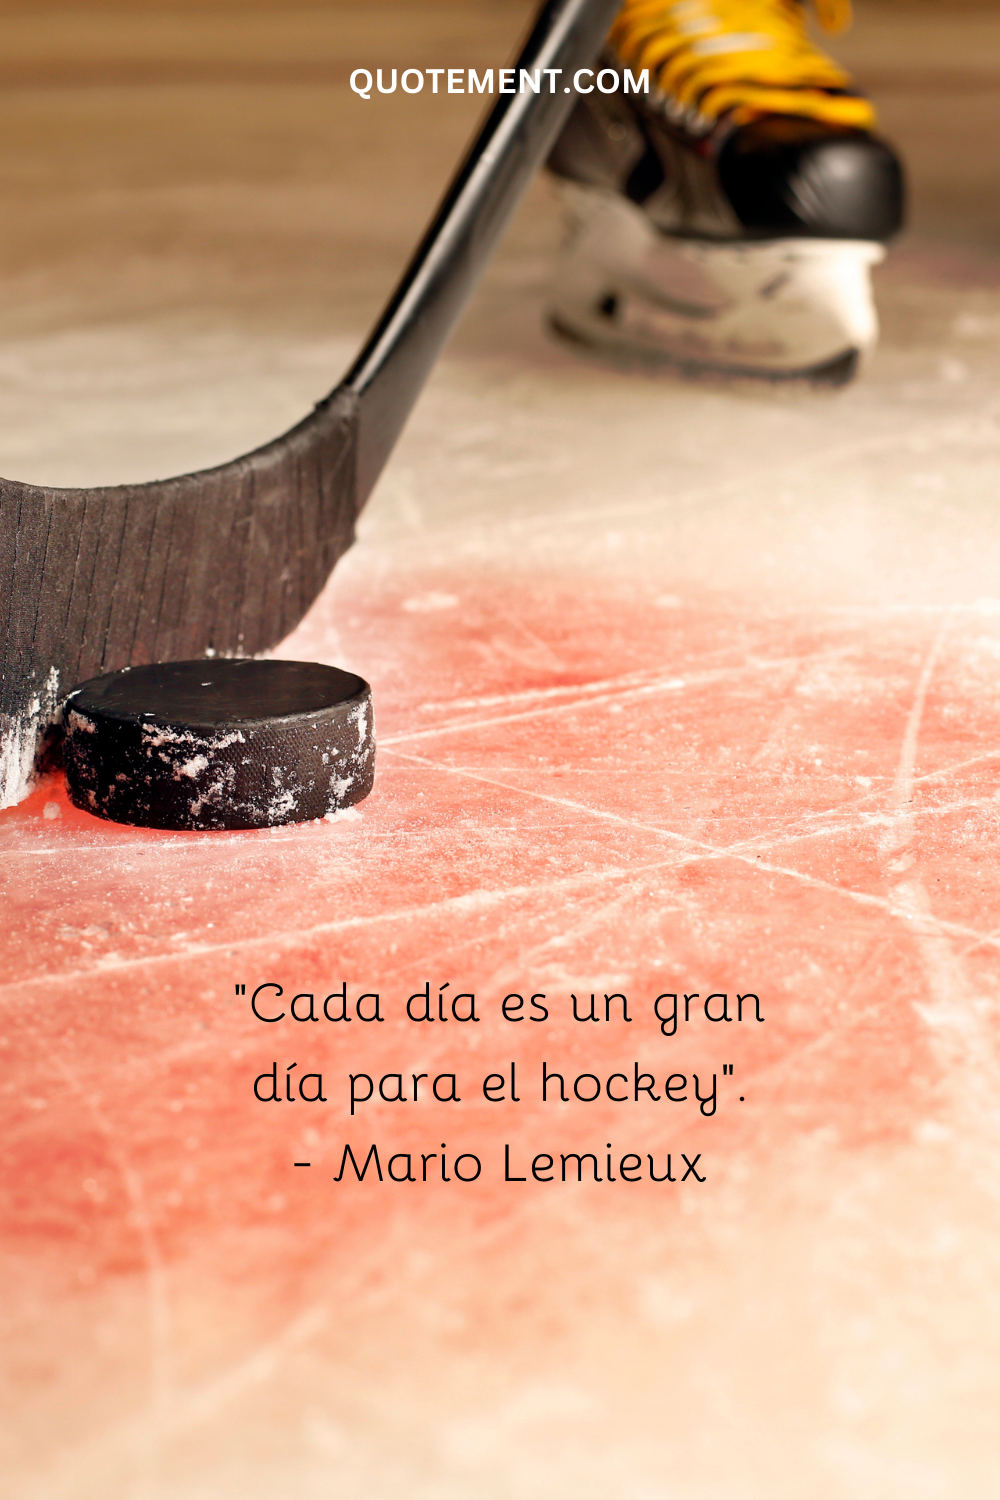 "Cada día es un gran día para el hockey". - Mario Lemieux